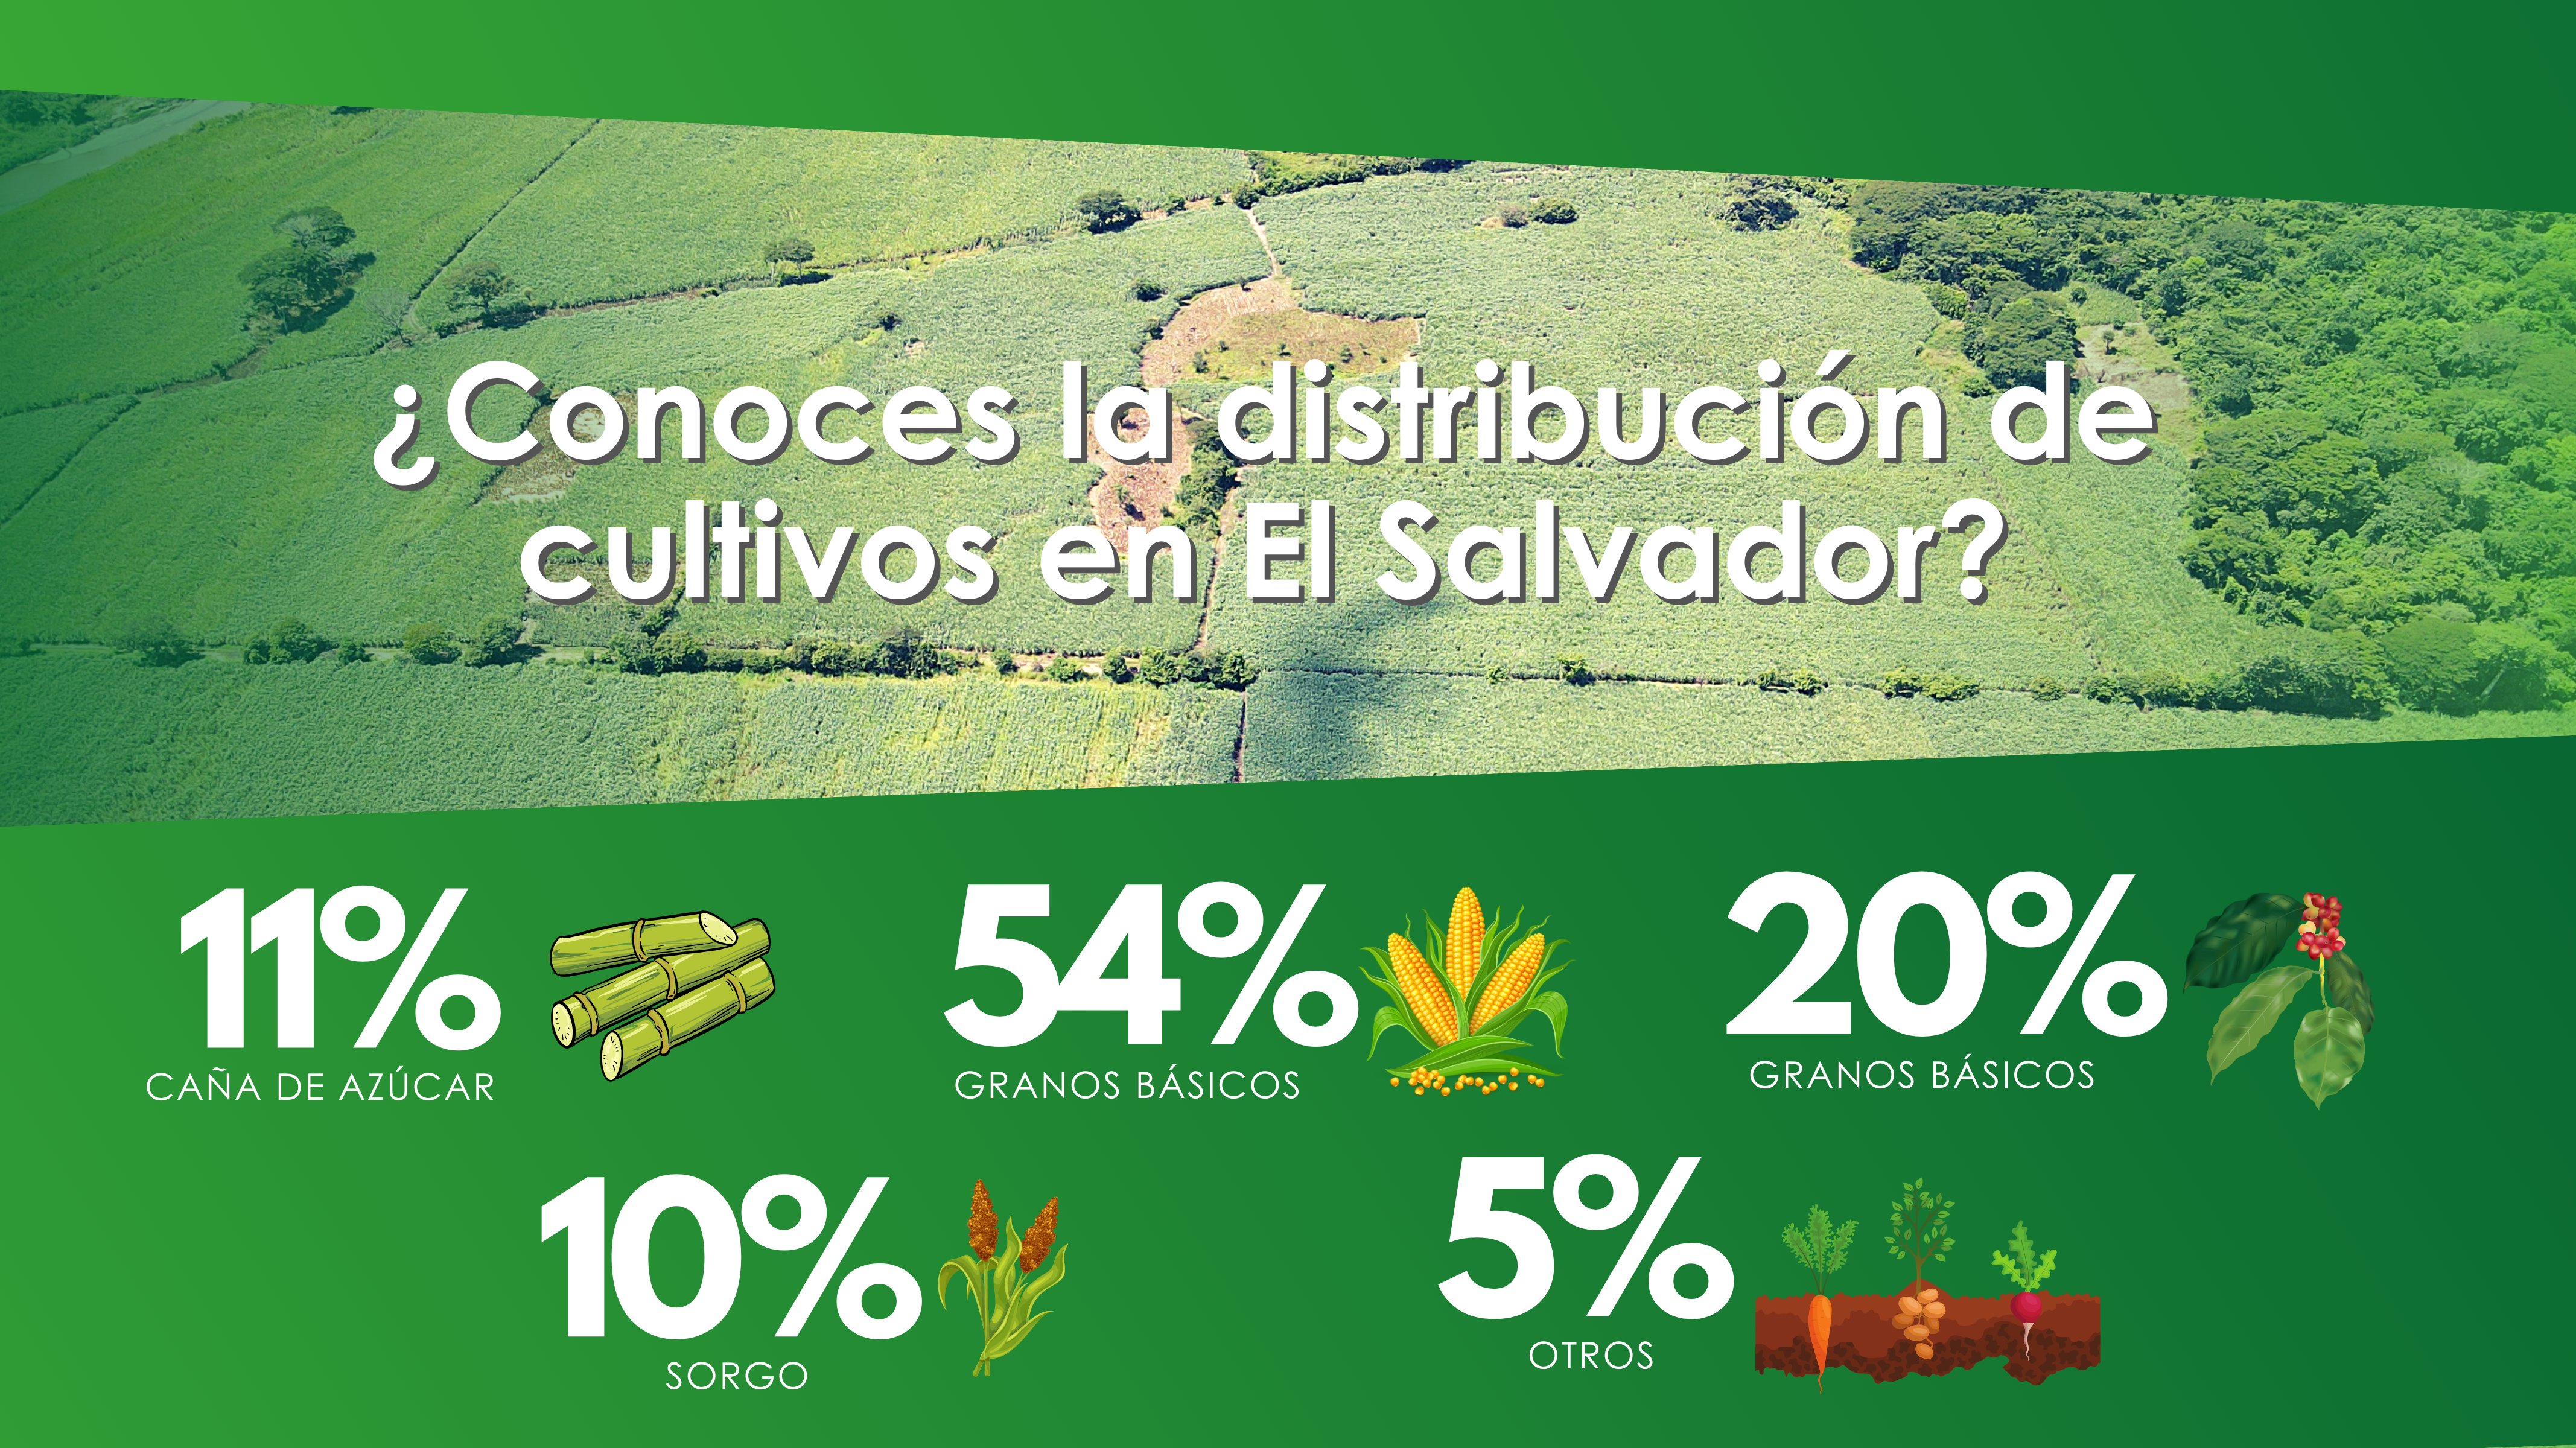 ¿Conoces la distribución de cultivos en El Salvador